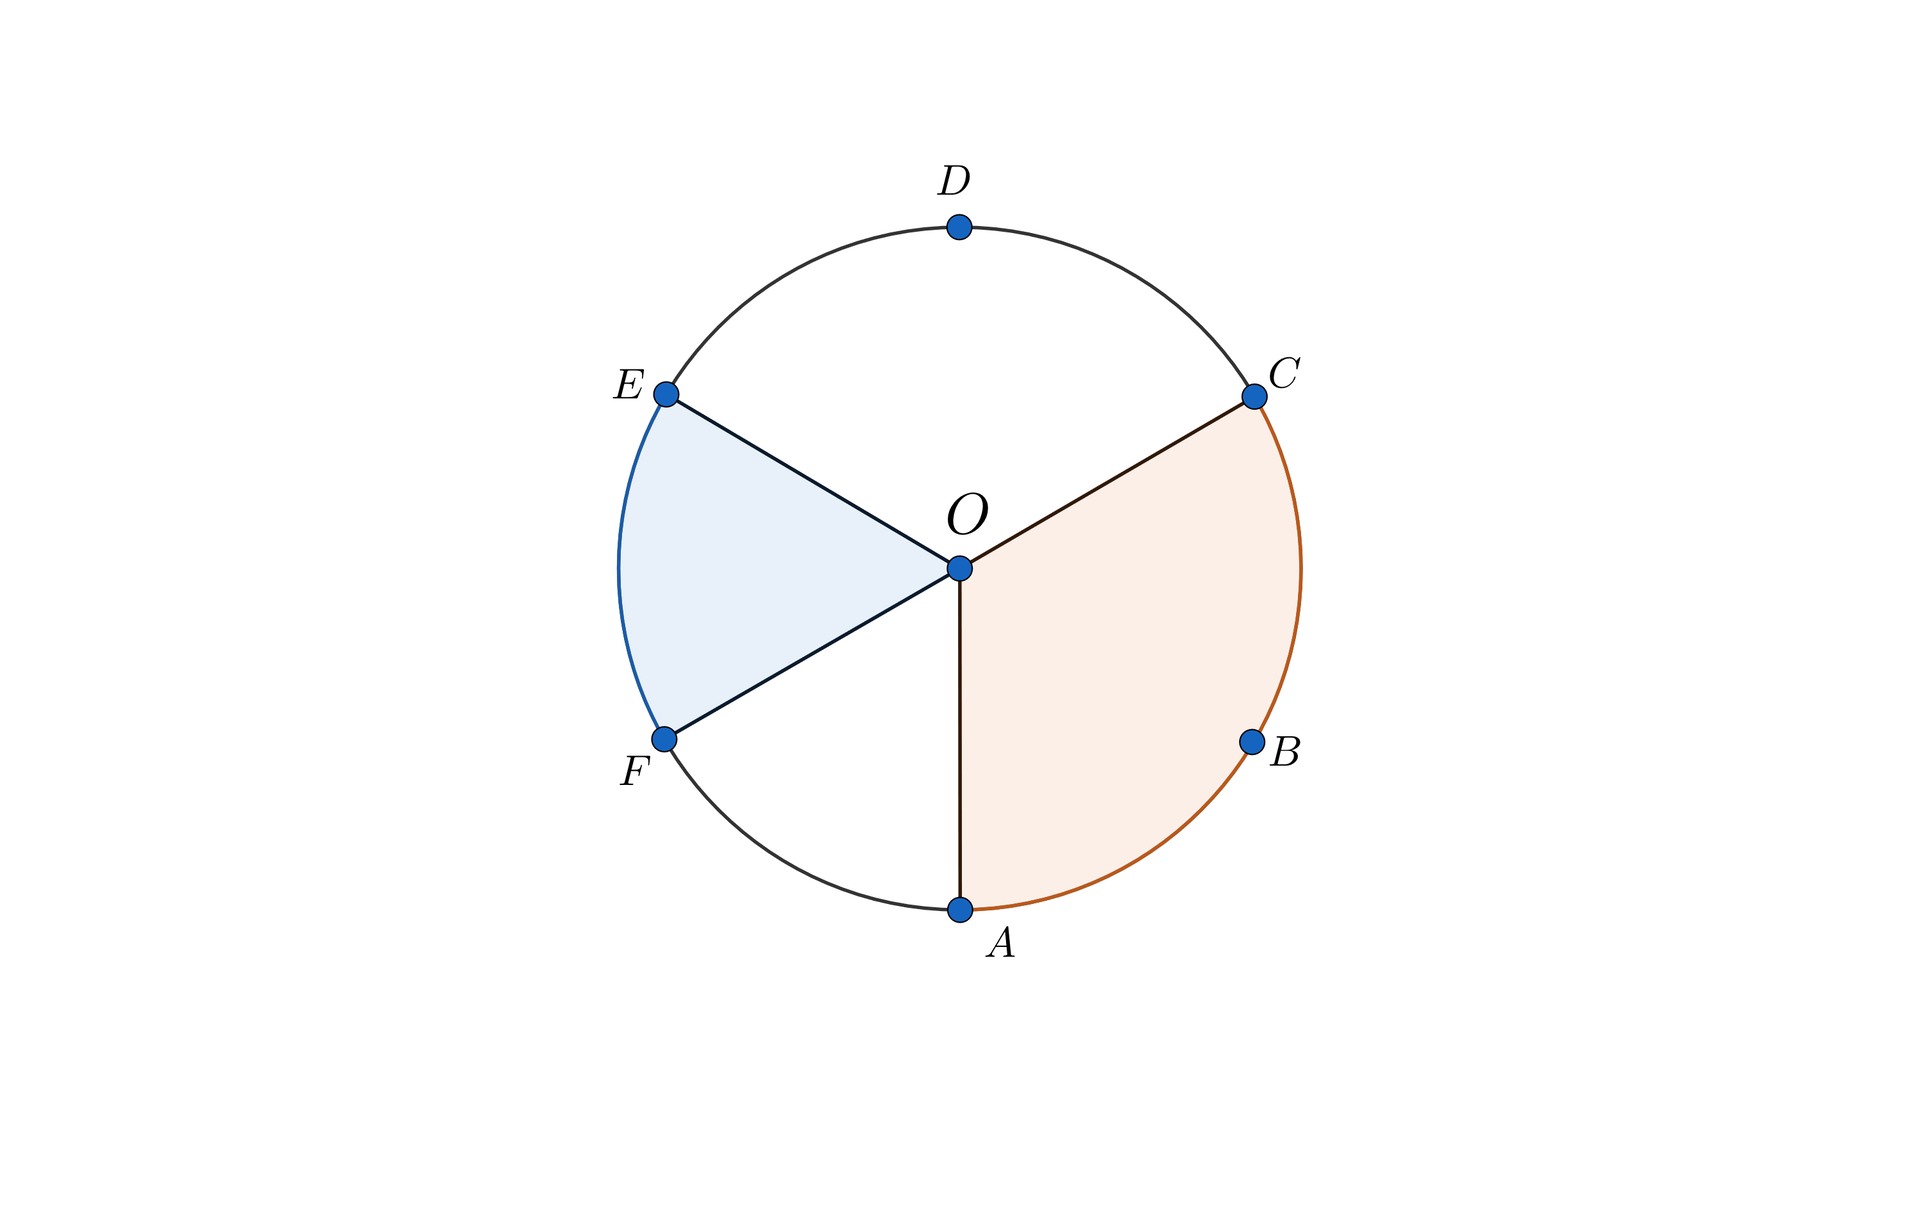 Ilustracja pierwsza przedstawia okrąg o środku w punkcie O. Na okręgu zaznaczono sześć punktów kolejno od A do F. W okręgu poprowadzono cztery promiennie: O A, O C, O E, O F. Kolorem wyróżniono dwa kąty wyznaczone przez te promienie: kąt oparty na łuku A B C oraz kąt oparty na łuku E F. 